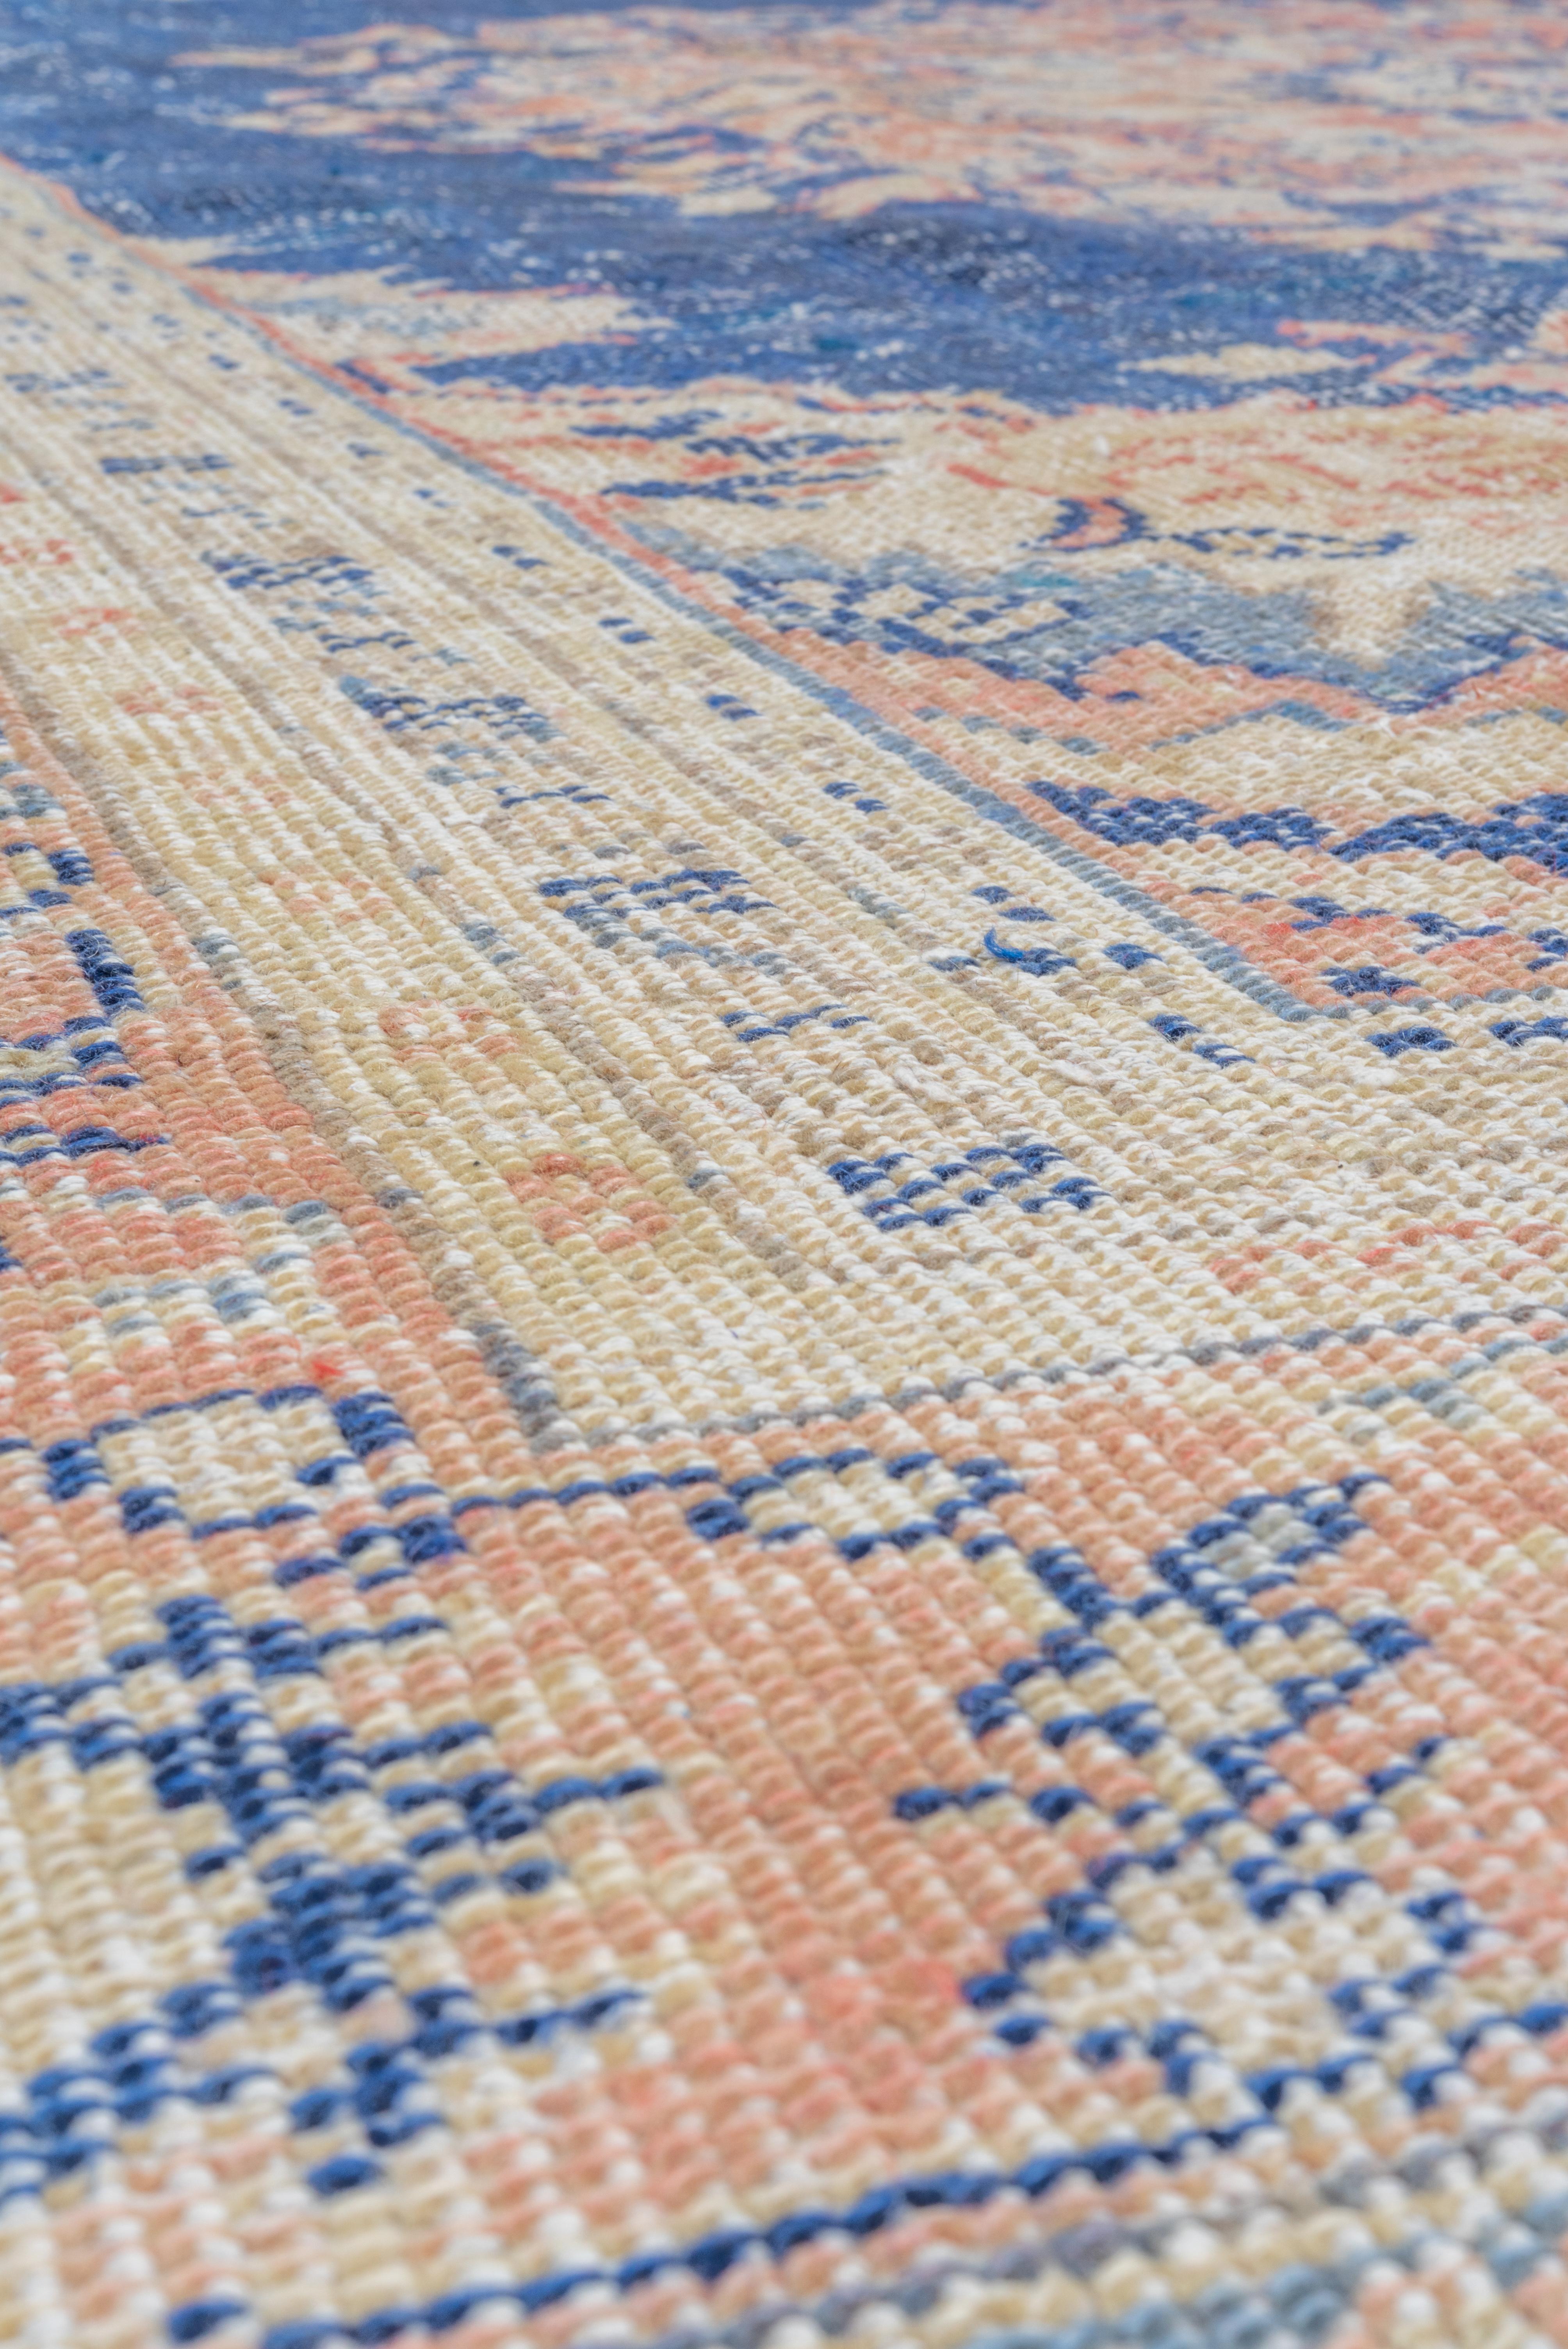 Eliko Rugs by David Ariel Dieser westanatolische Stadtteppich ist in einem modifizierten persischen Medaillon-Stil mit einem reichen  blaues halboffenes Feld und ein Medaillon/Ecken-Layout.  Das zentrale Oktofoil ist von eingerollten Blattvoluten